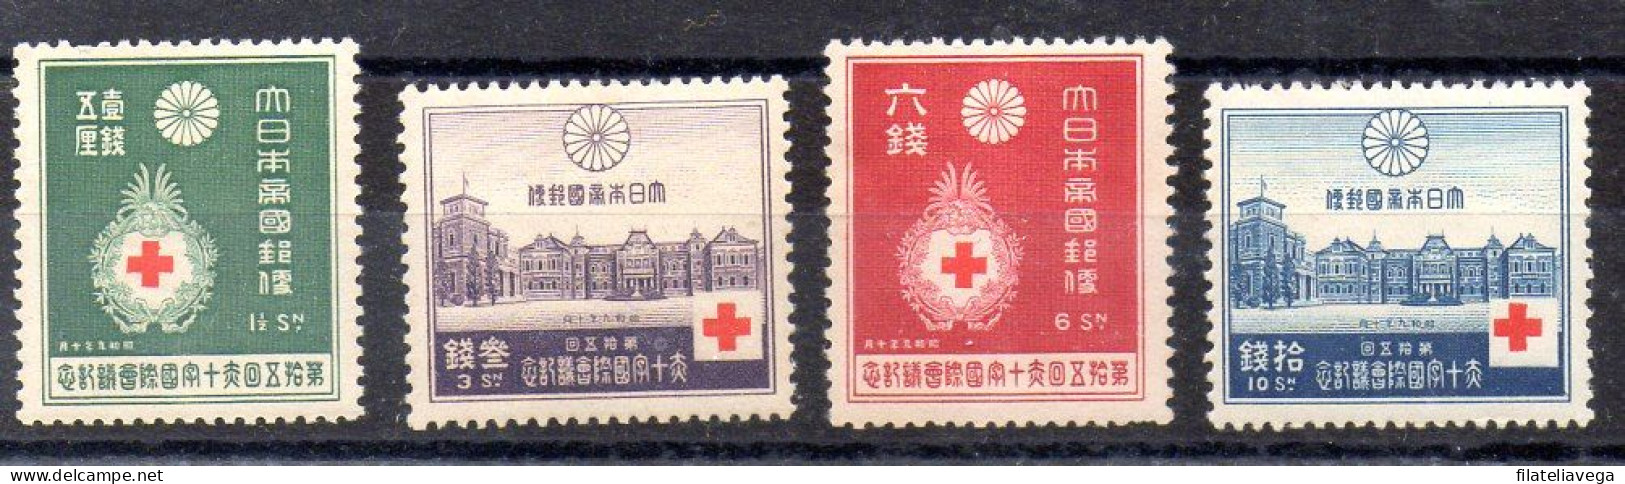 Japón Serie N ºYvert 218/21 **/* ( Nº Yvert 219/20 *) - Unused Stamps